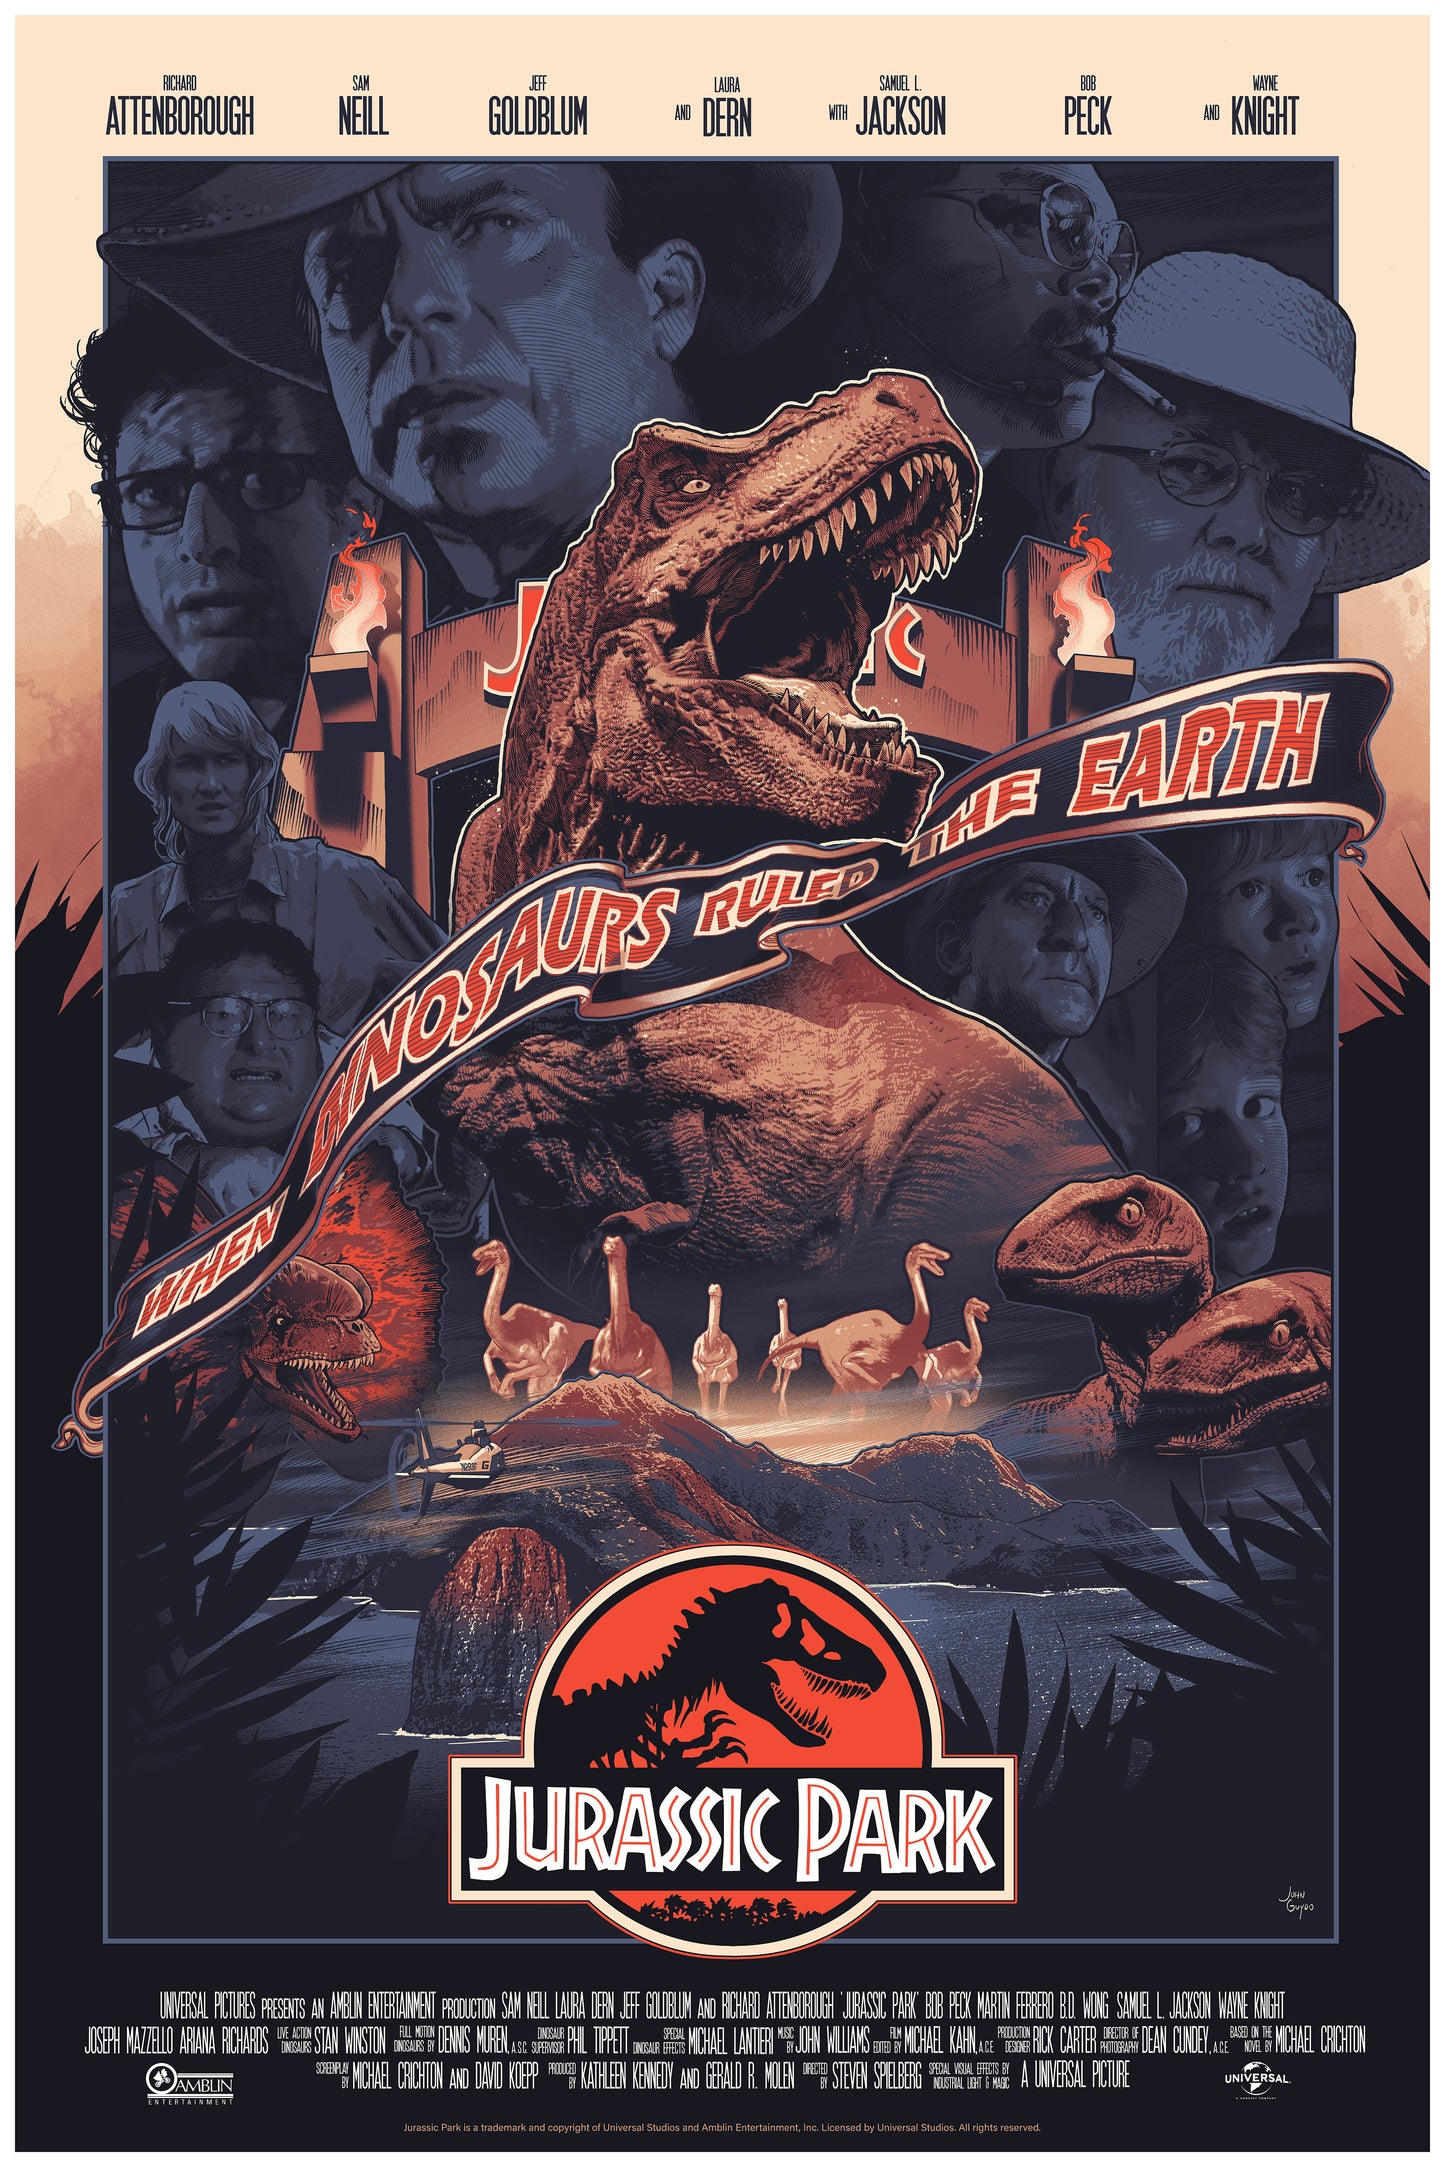 John Guydo "Jurassic Park" Variant